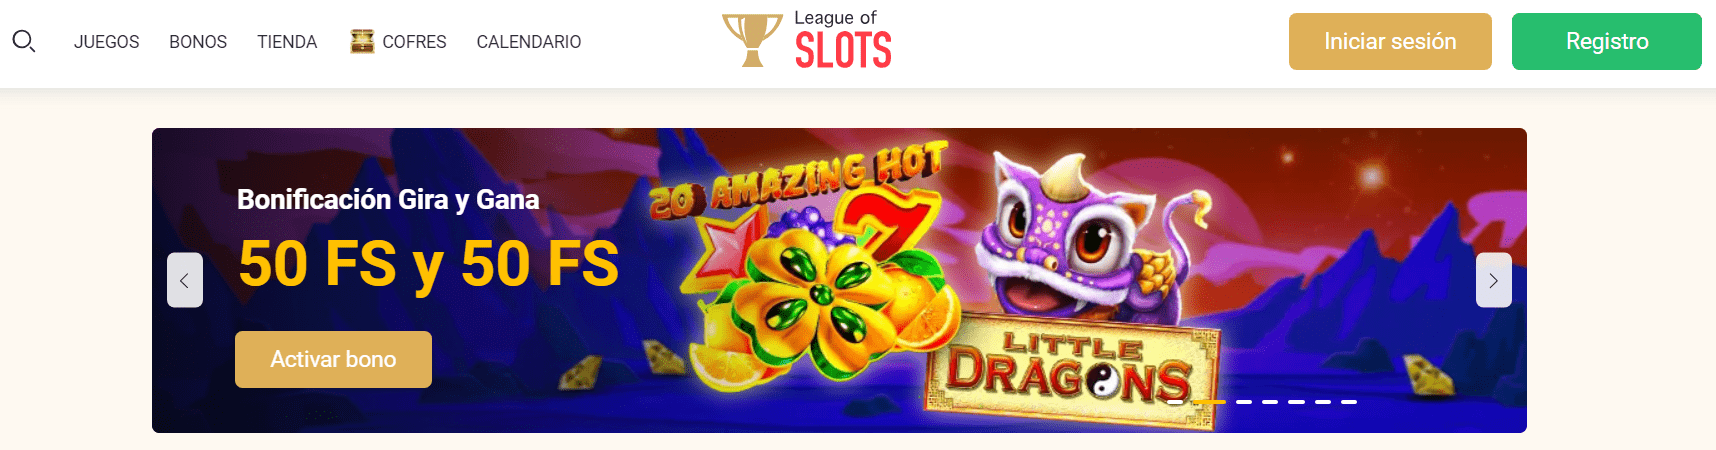 Bono sin depósito de League of Slots casino